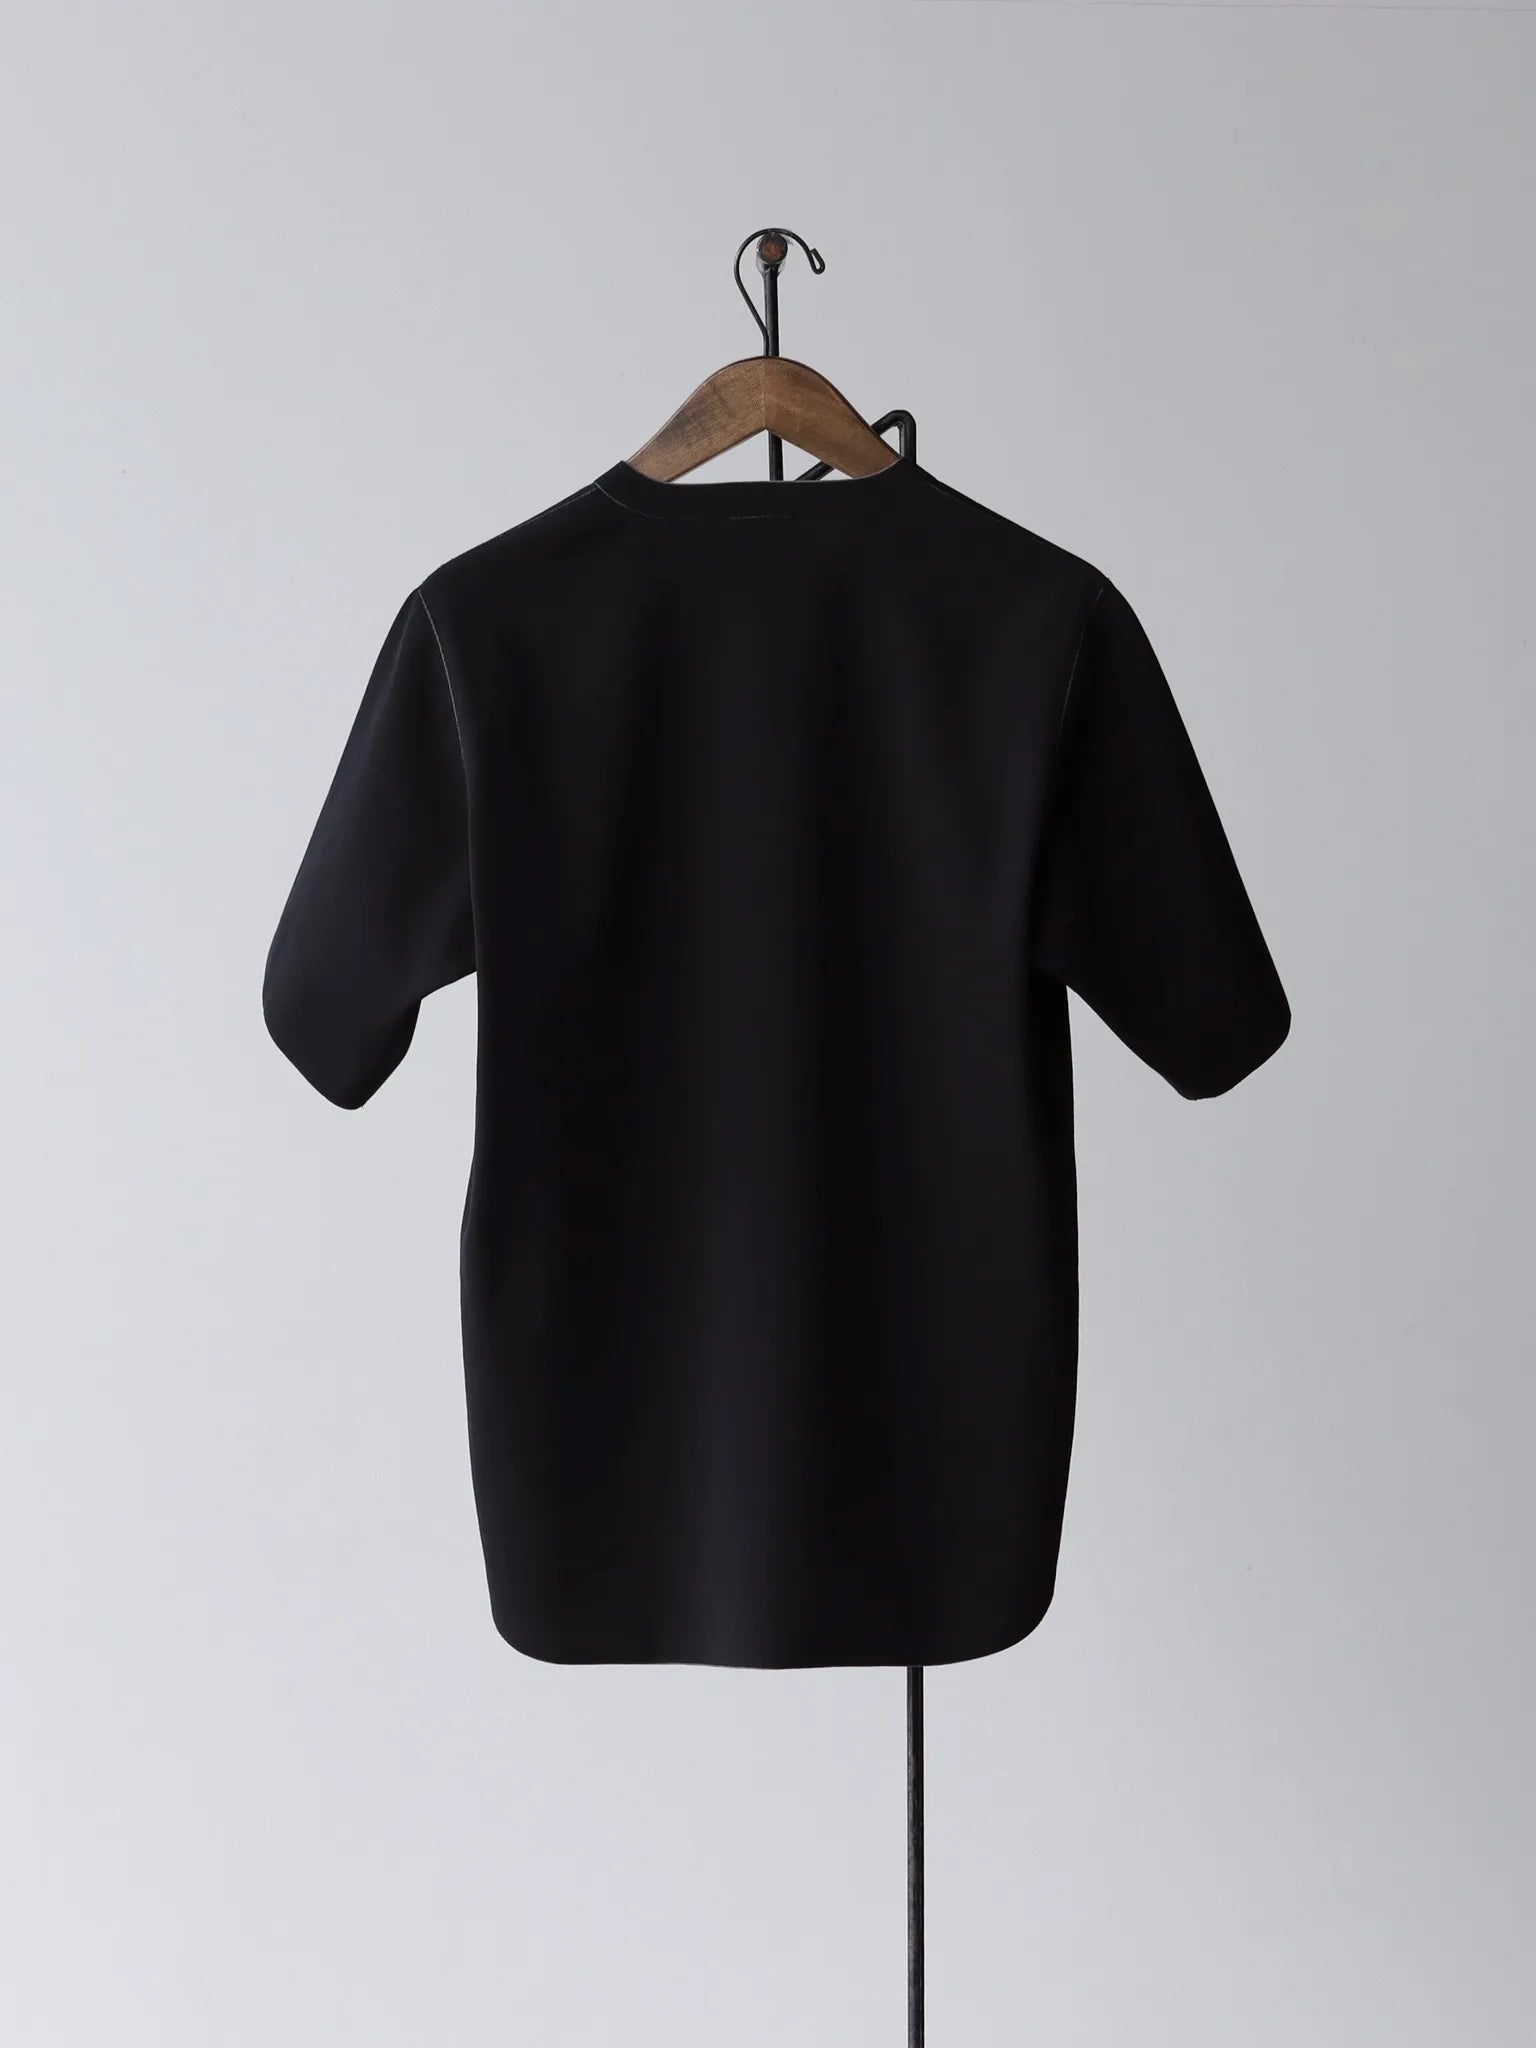 山内-zz強撚ポンチ-ショートスリーブtシャツ-black-gray-cord-2